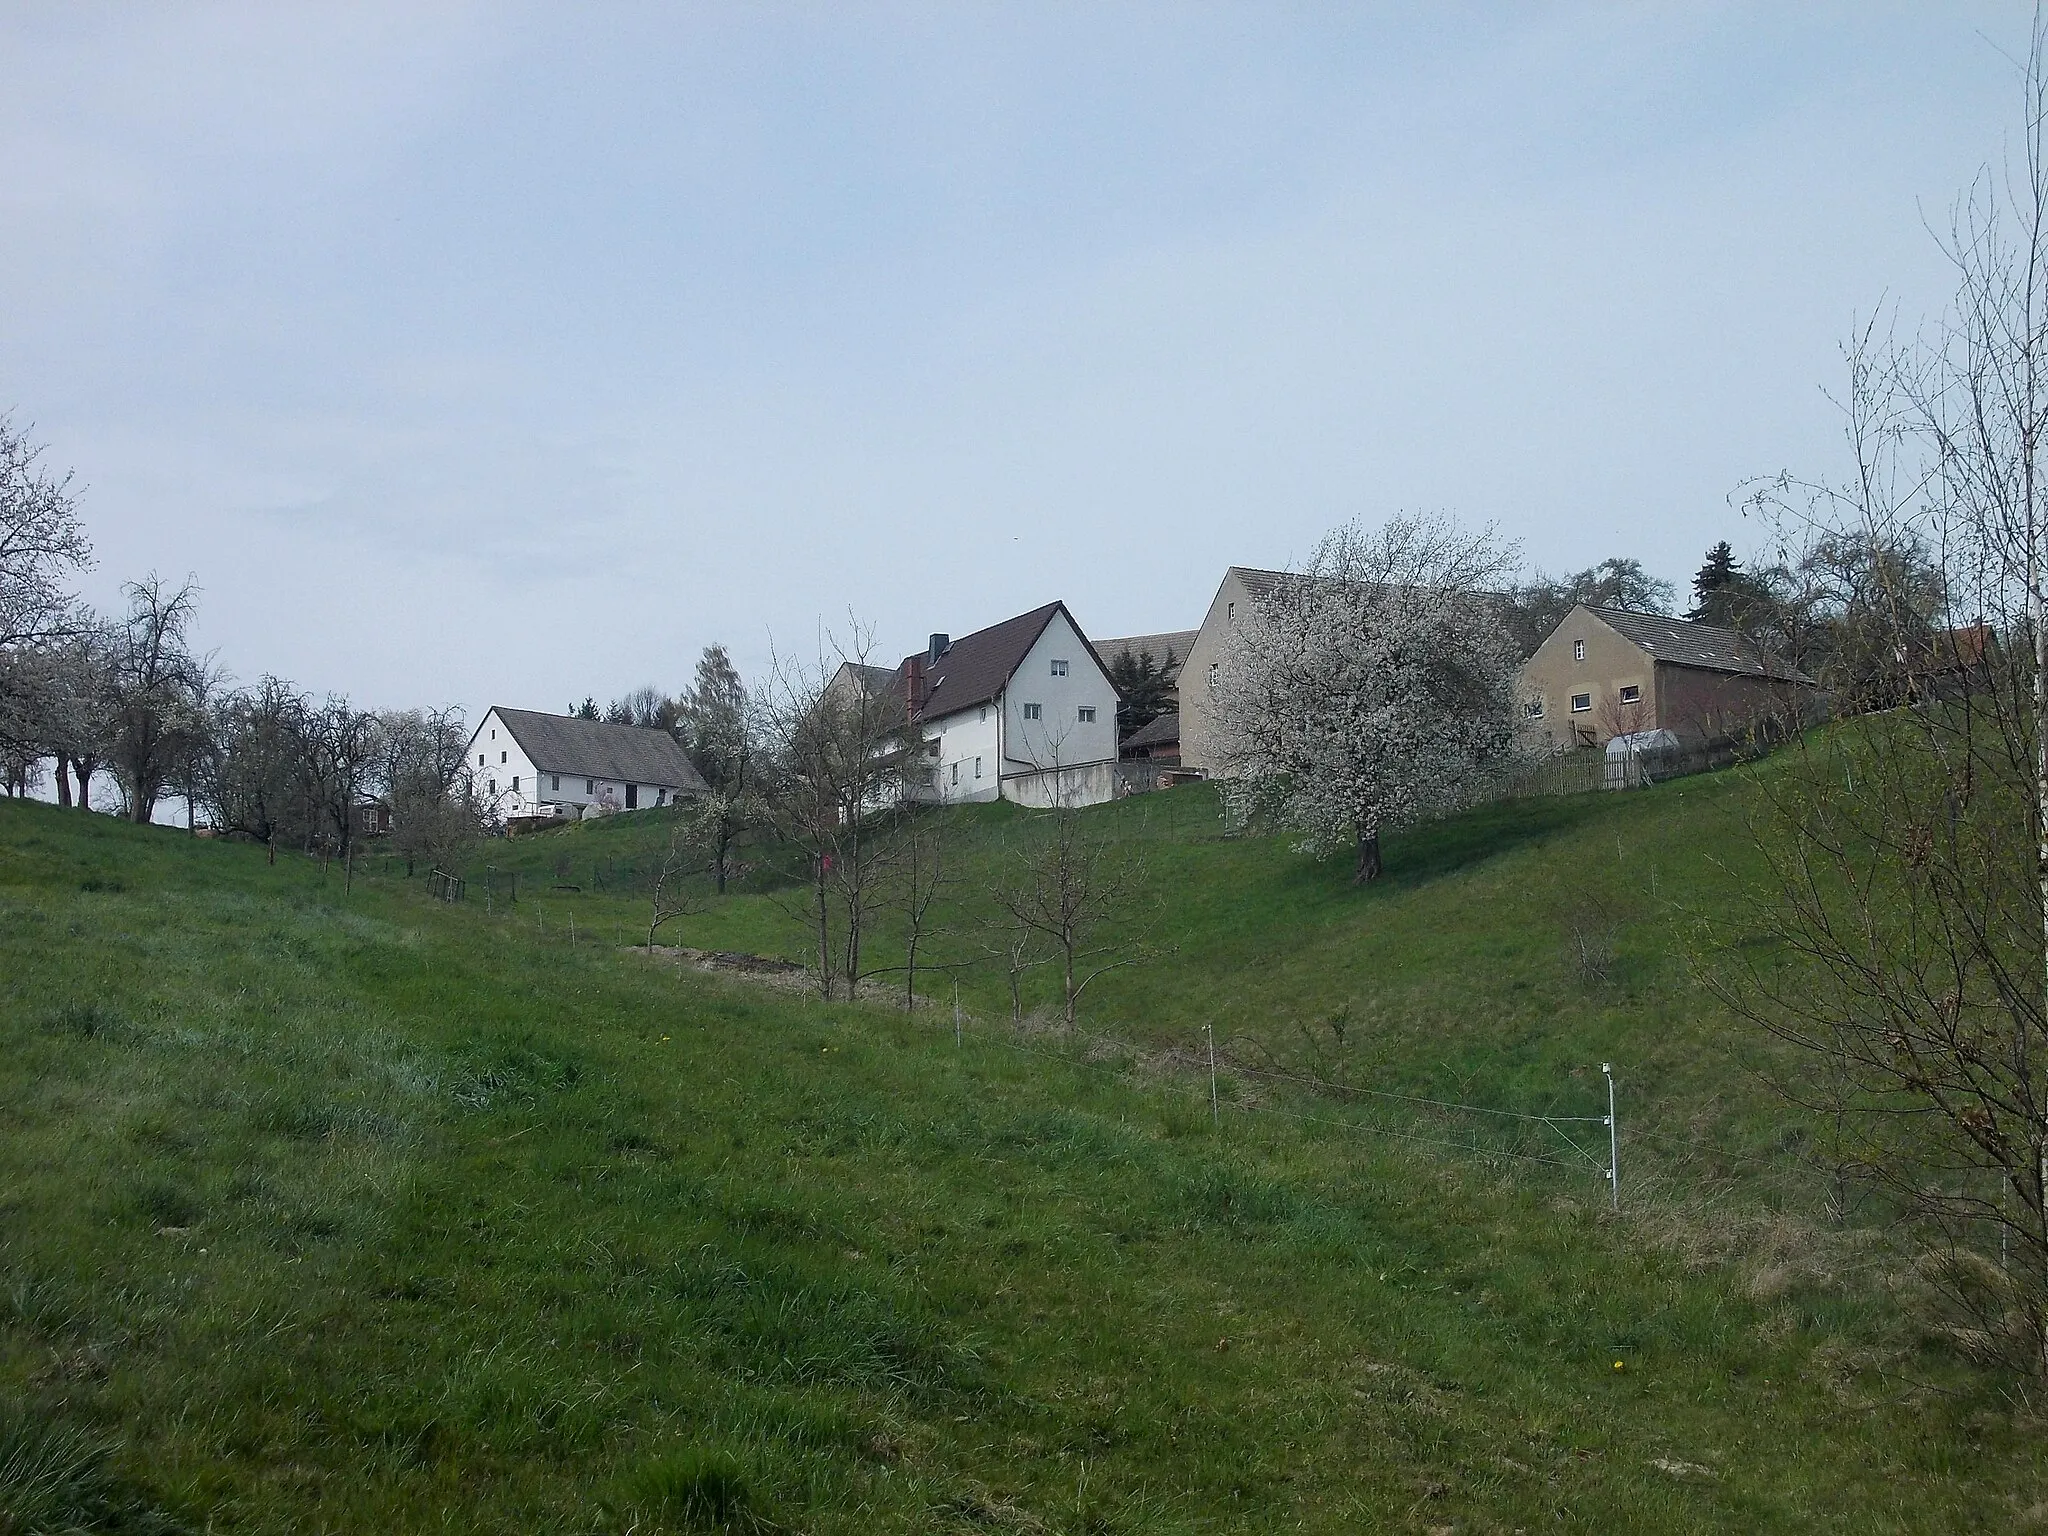 Photo showing: View of Göhren (Wechselburg, mittelsachsen district, Saxony) from the hiking path